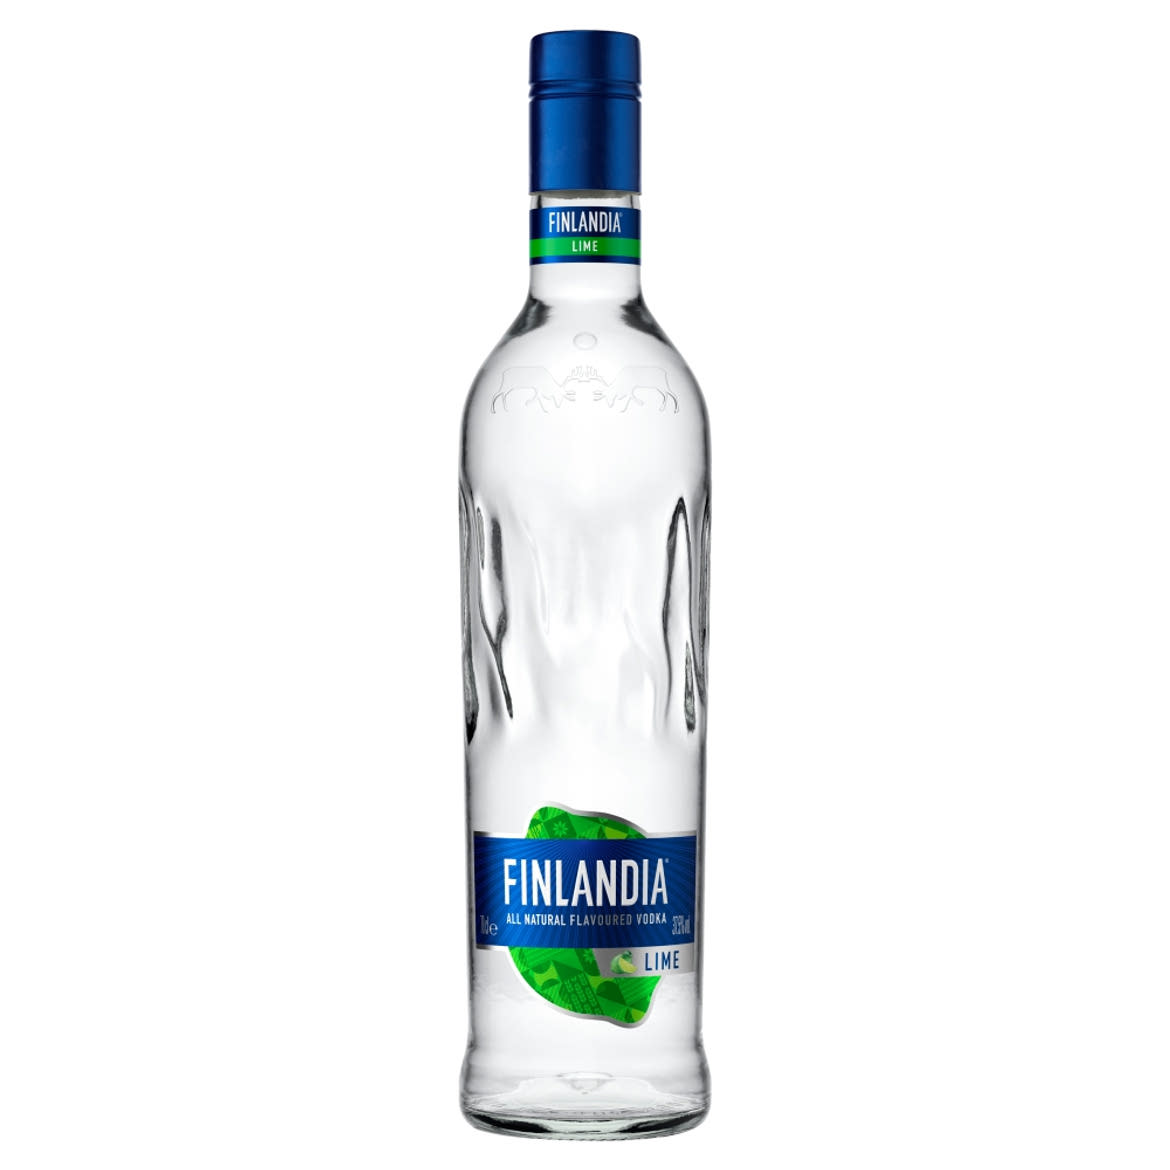 Finlandia limeízű vodka 37,5%